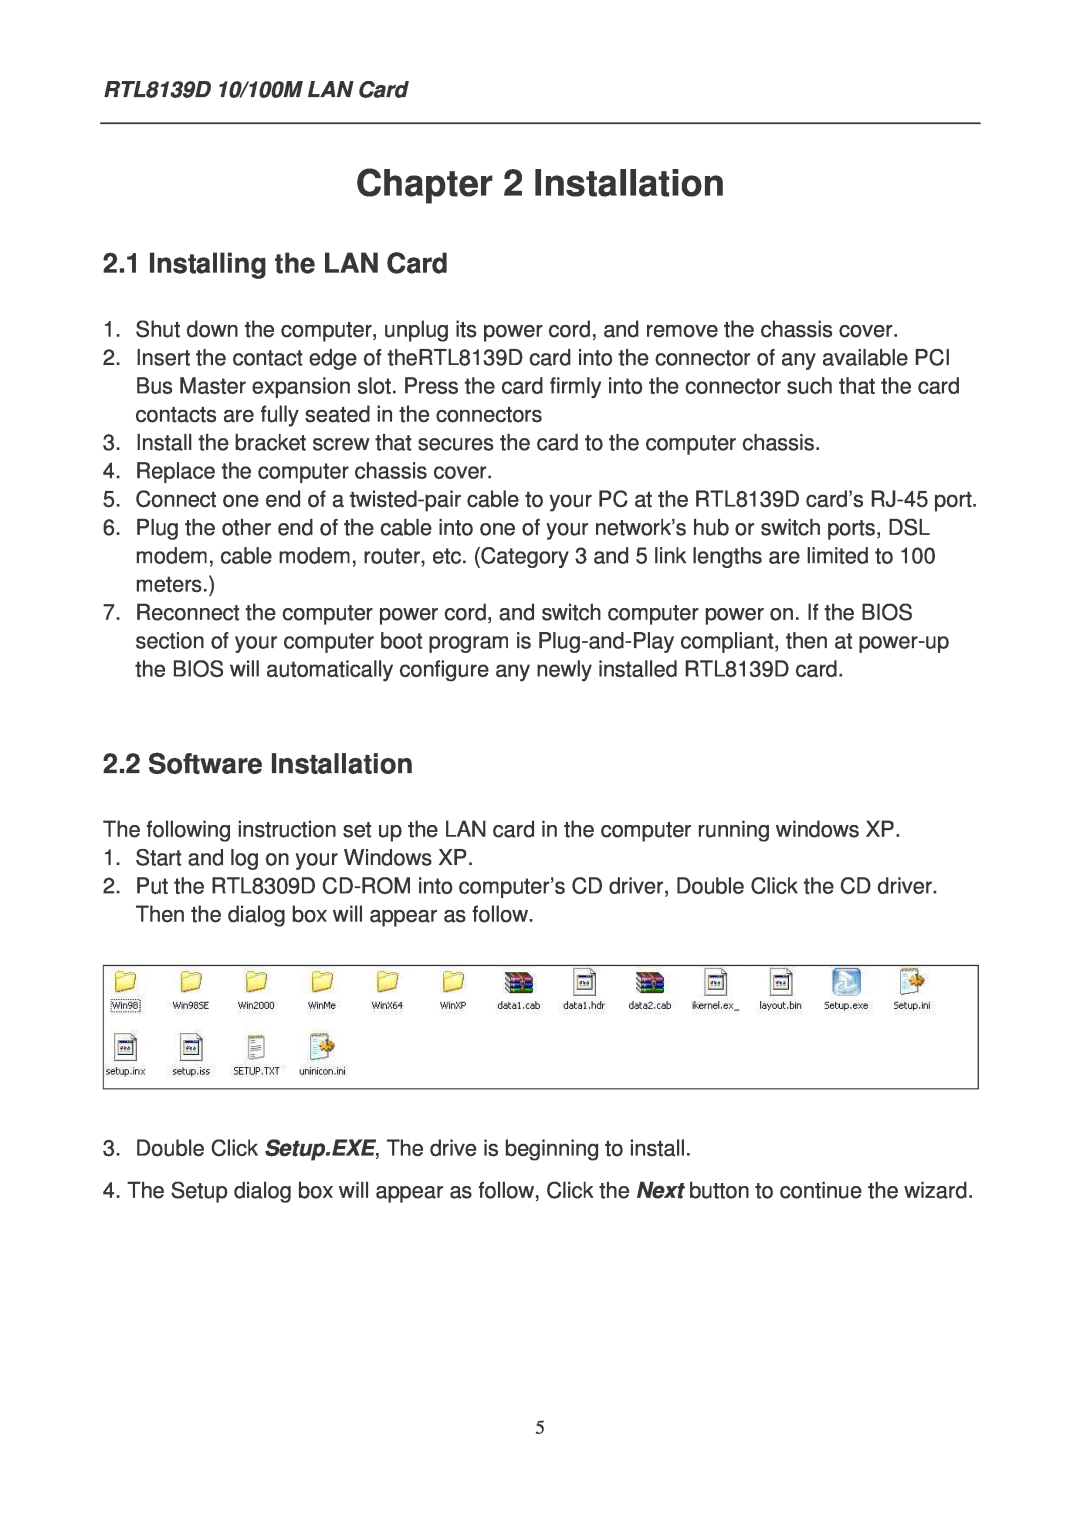 Lindy manual Installing the LAN Card, Software Installation, RTL8139D 10/100M LAN Card 